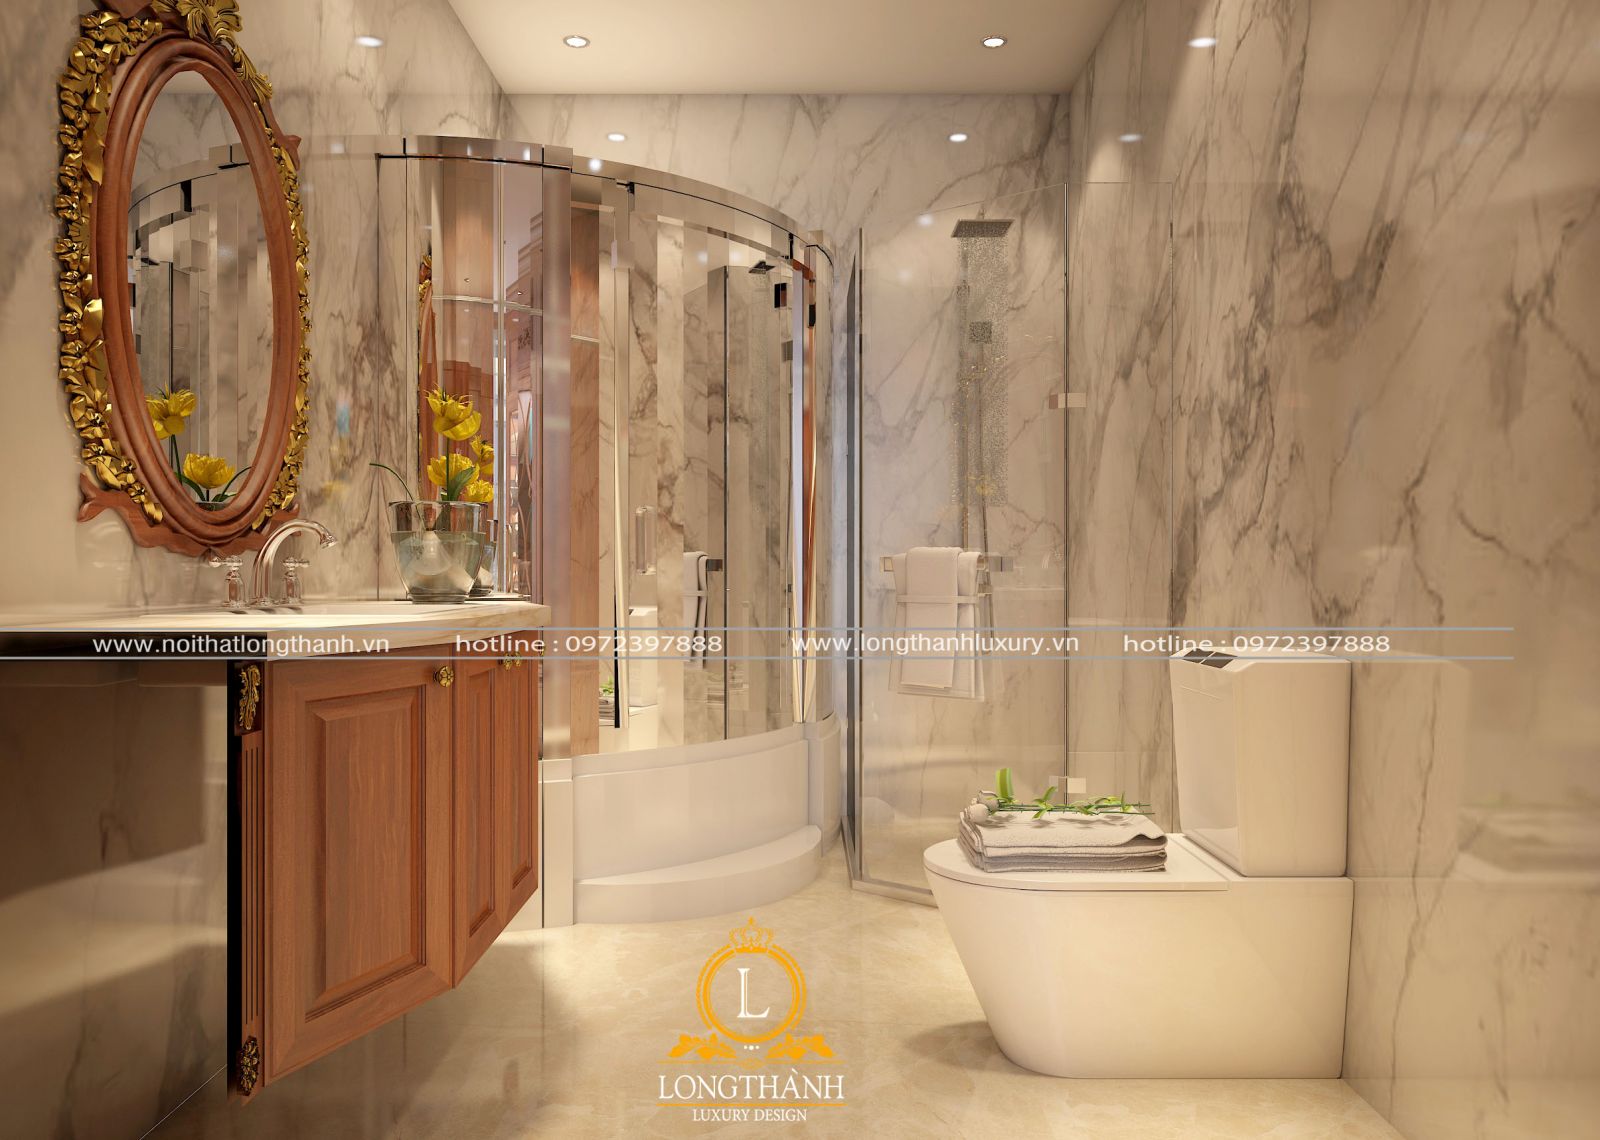 Nội thất phòng tắm tân cổ điển được thiết kế tối giản phù hợp với nhiều phong cách thiết kế từ nhà phố, chung cư, biệt thự.